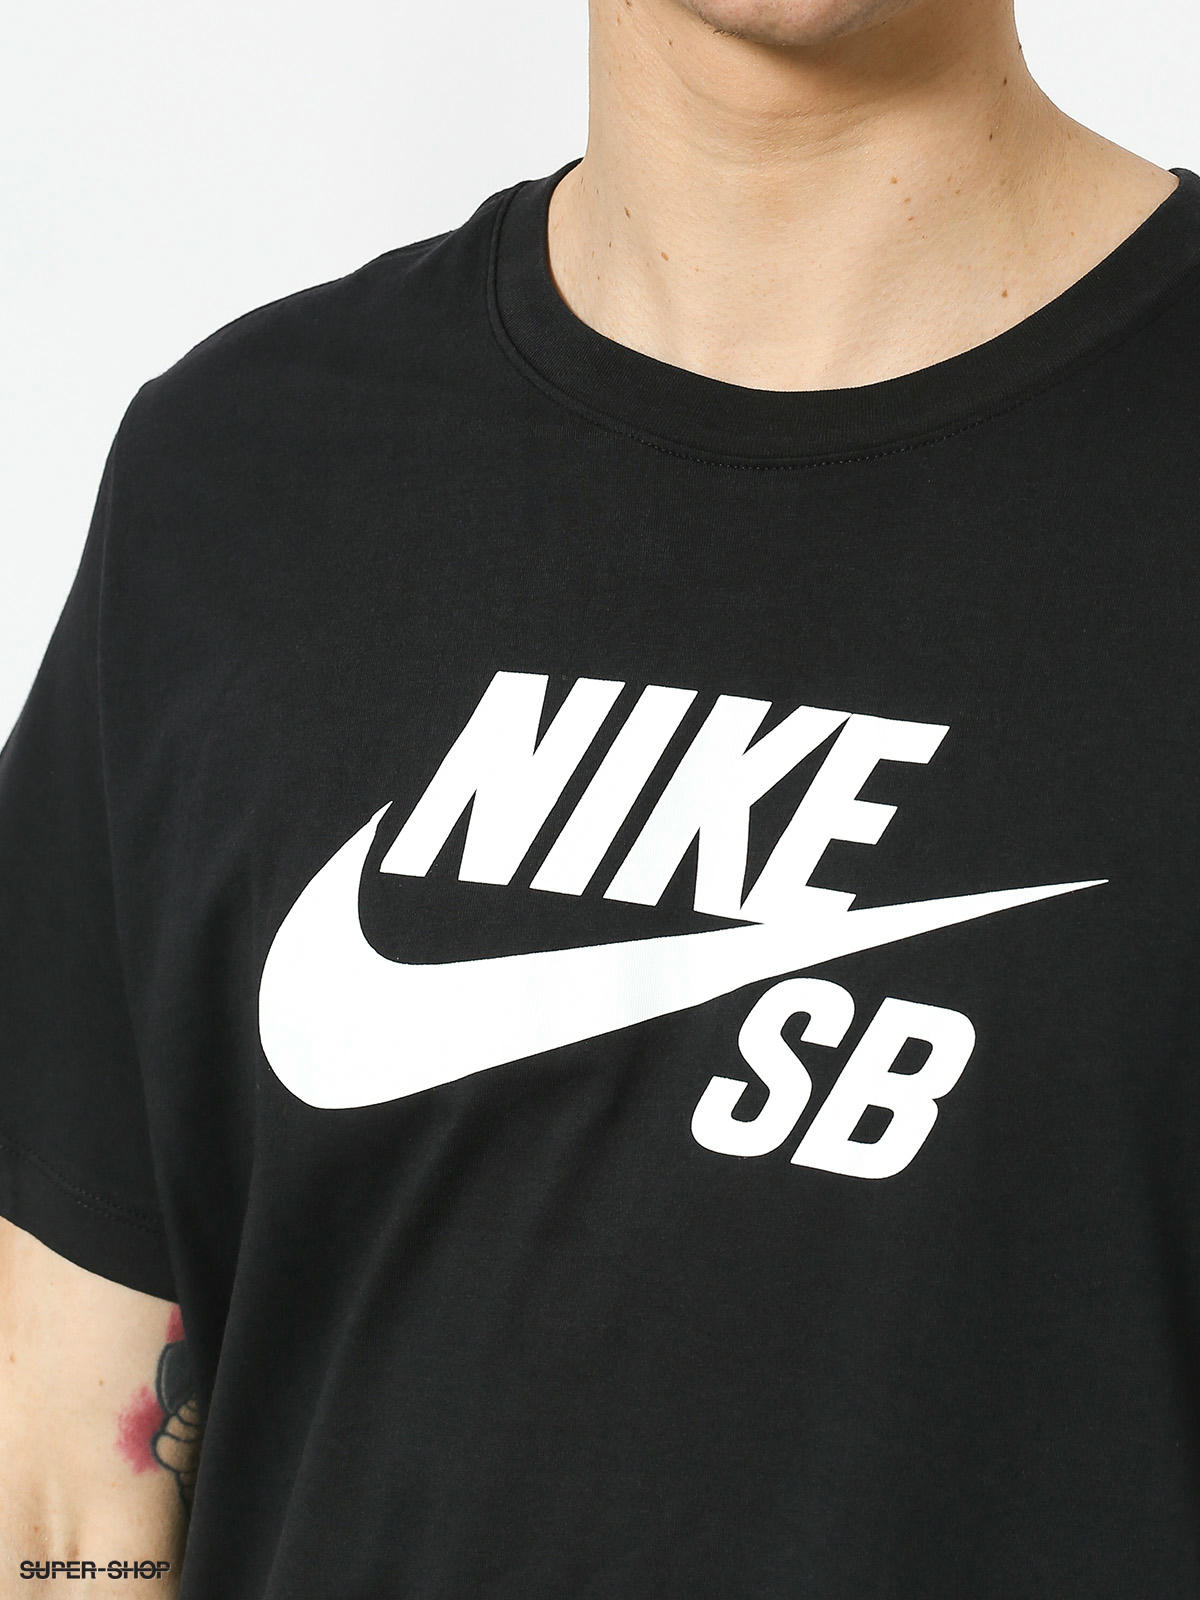 sb shirt